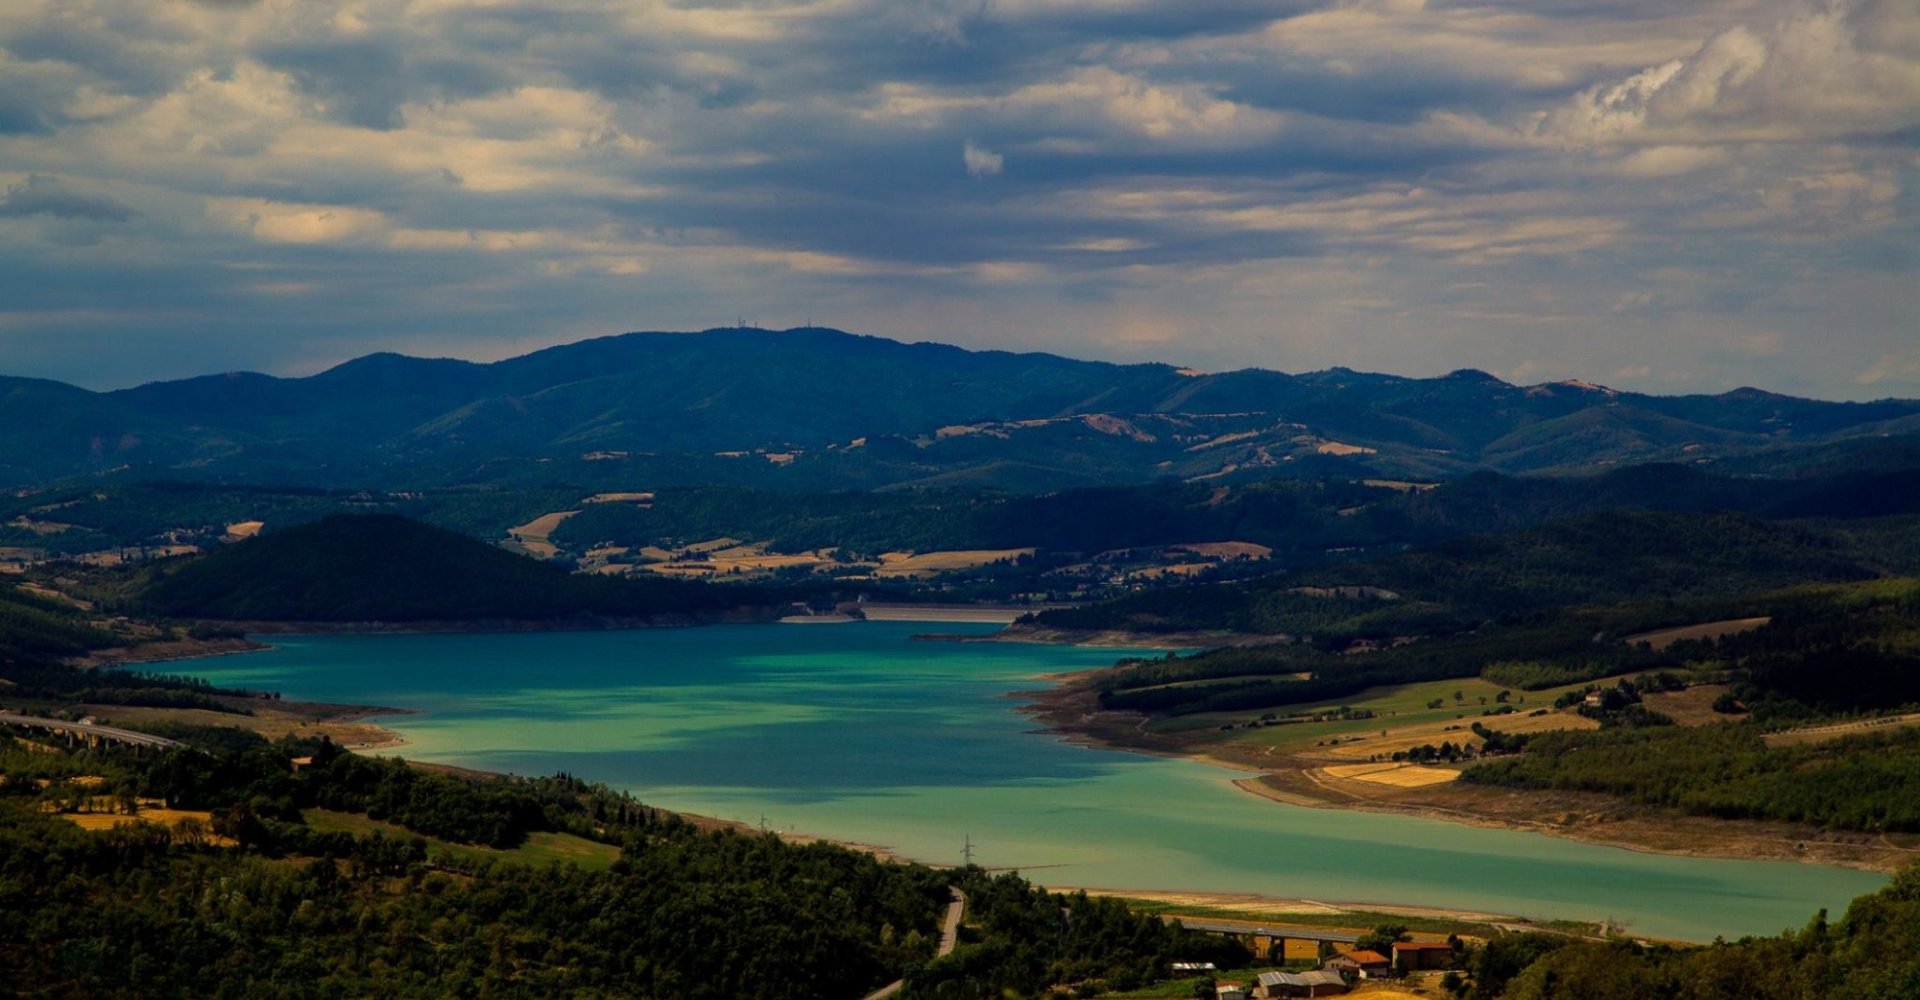 Il lago di Montedoglio è il lago più esteso della Toscana